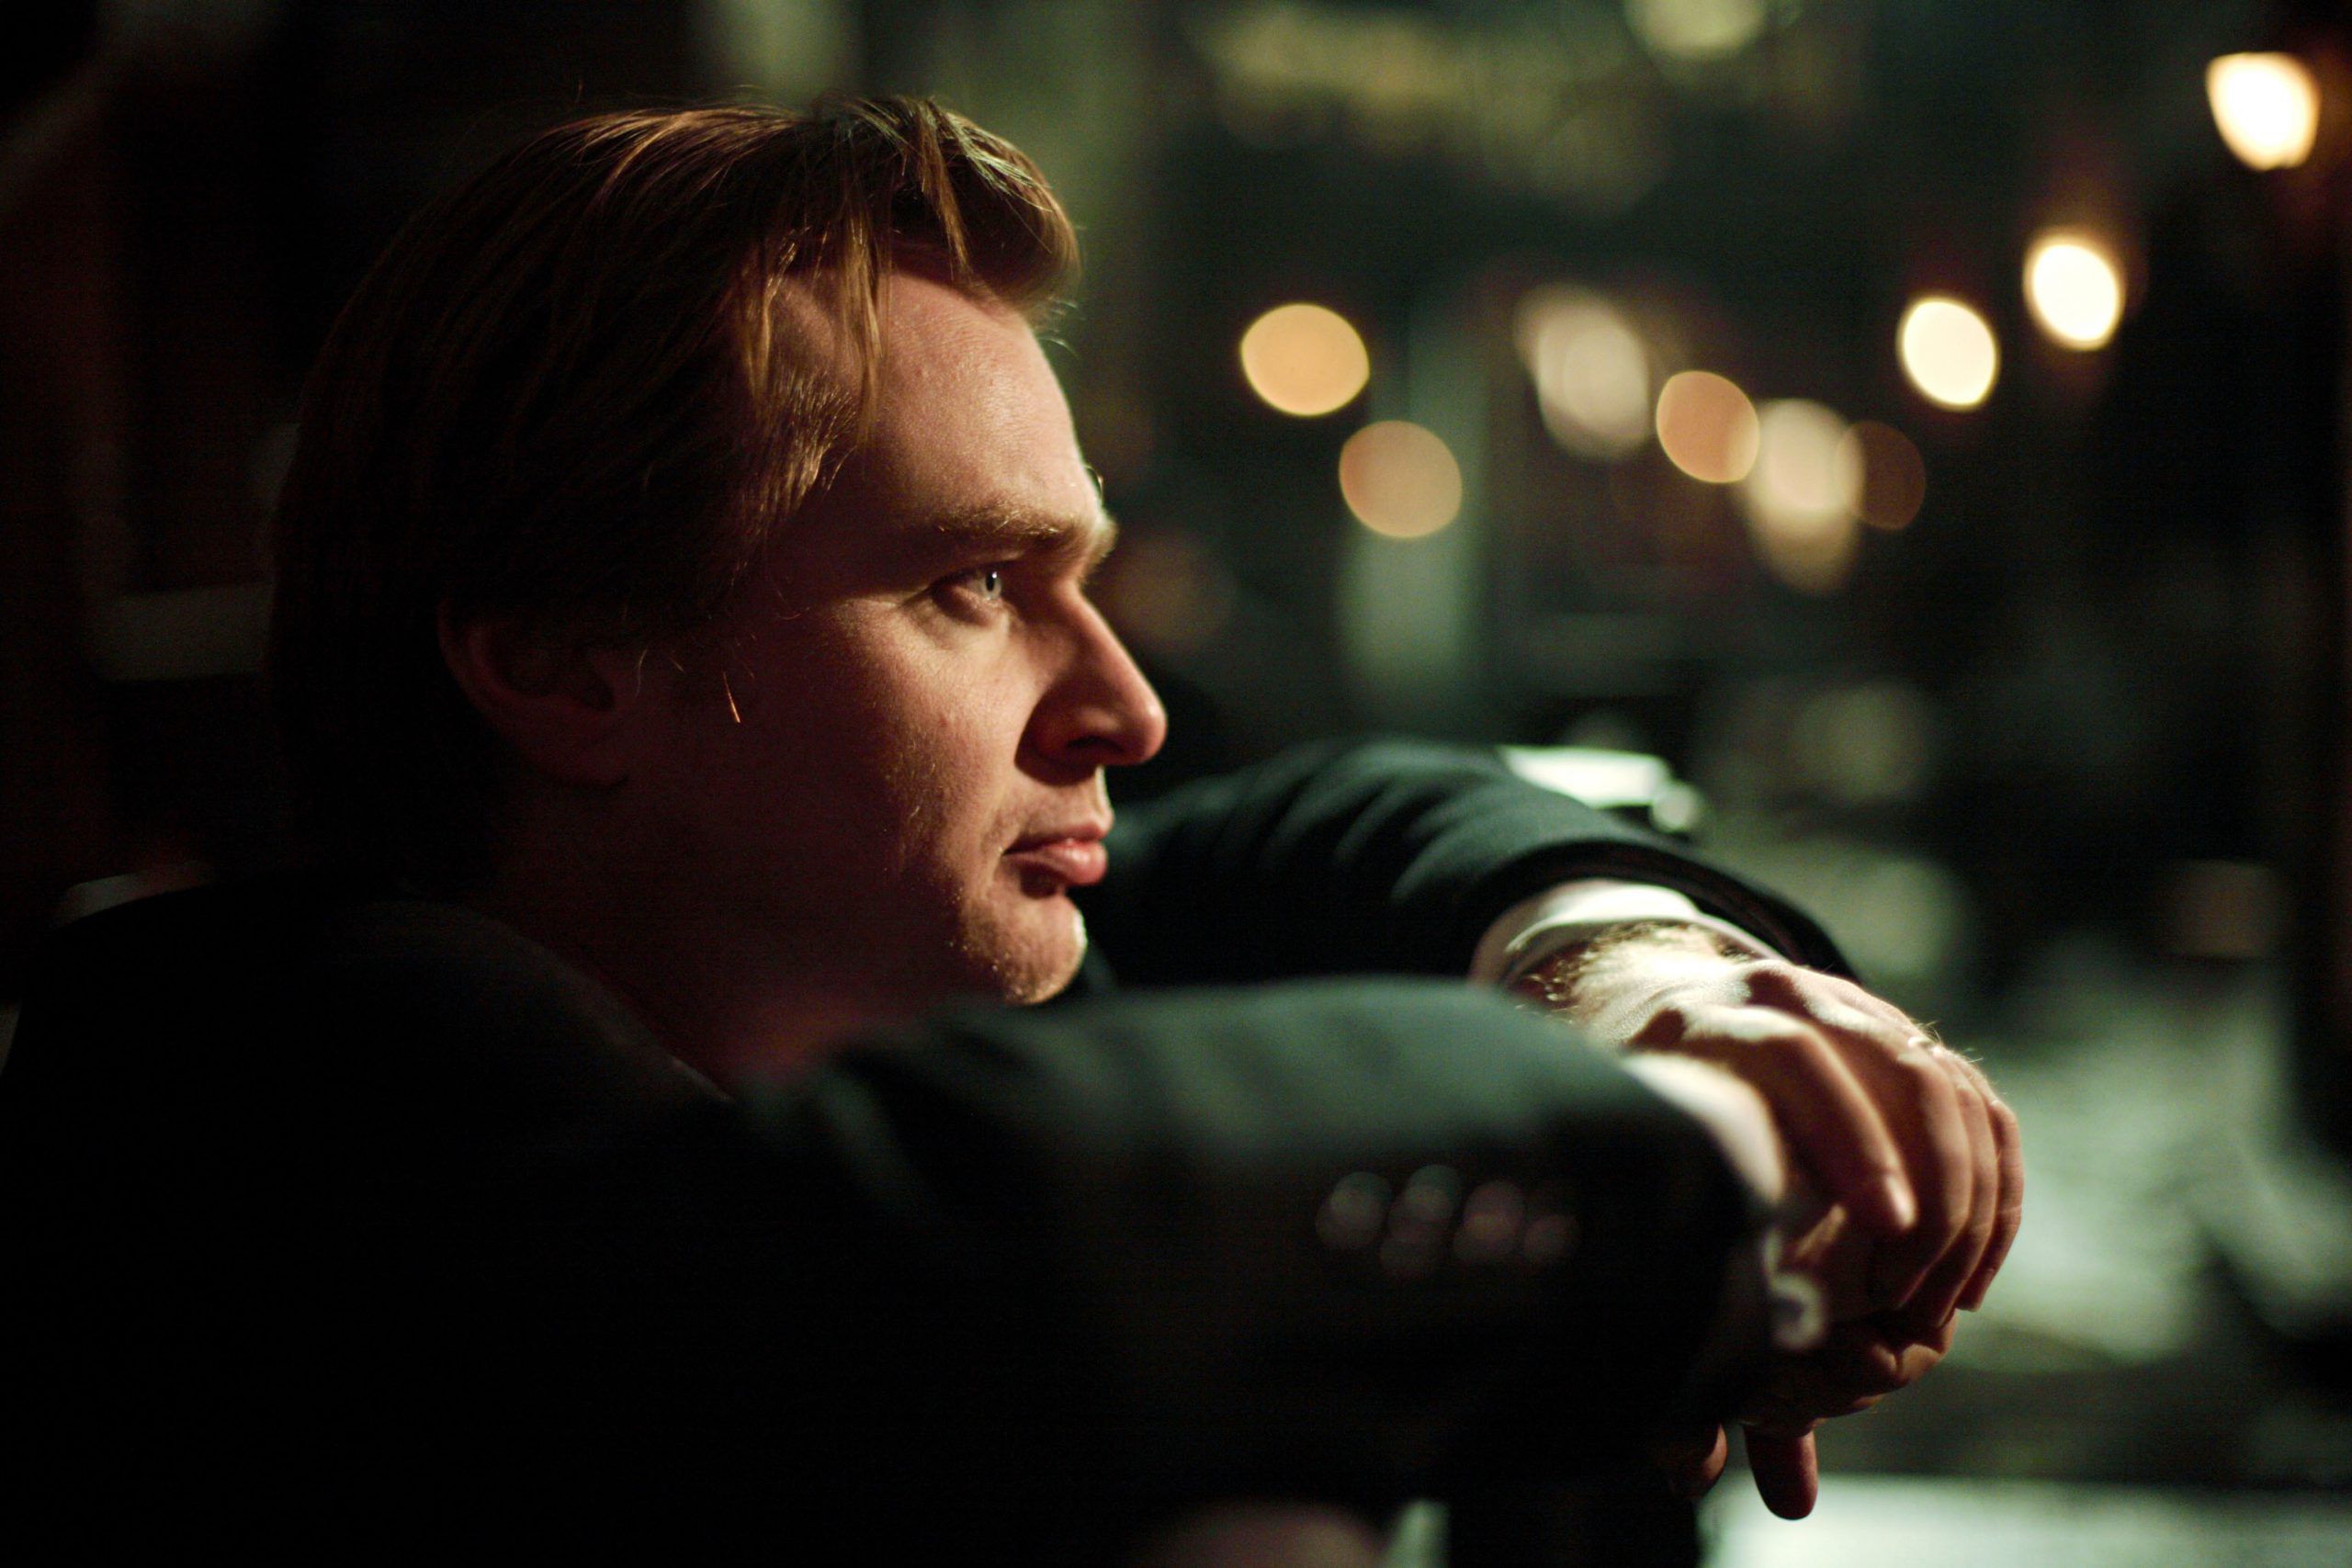 Christopher Nolan, o pós-moderno ousado e vanguardista